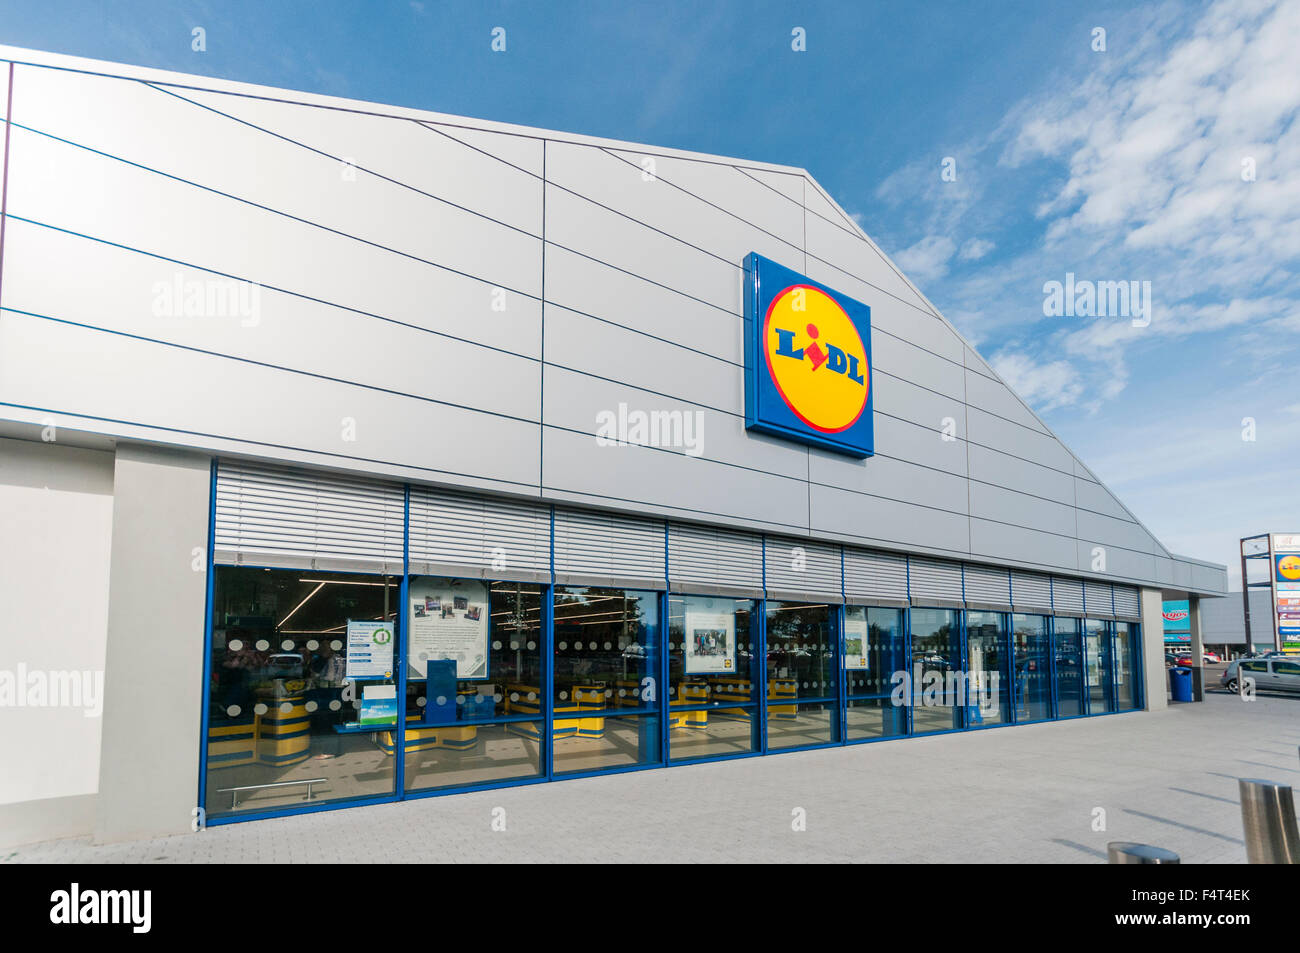 Ein Budget-Lidl-Supermarkt-Shop speichern in Nordirland, Vereinigtes Königreich, Vereinigtes Königreich Stockfoto